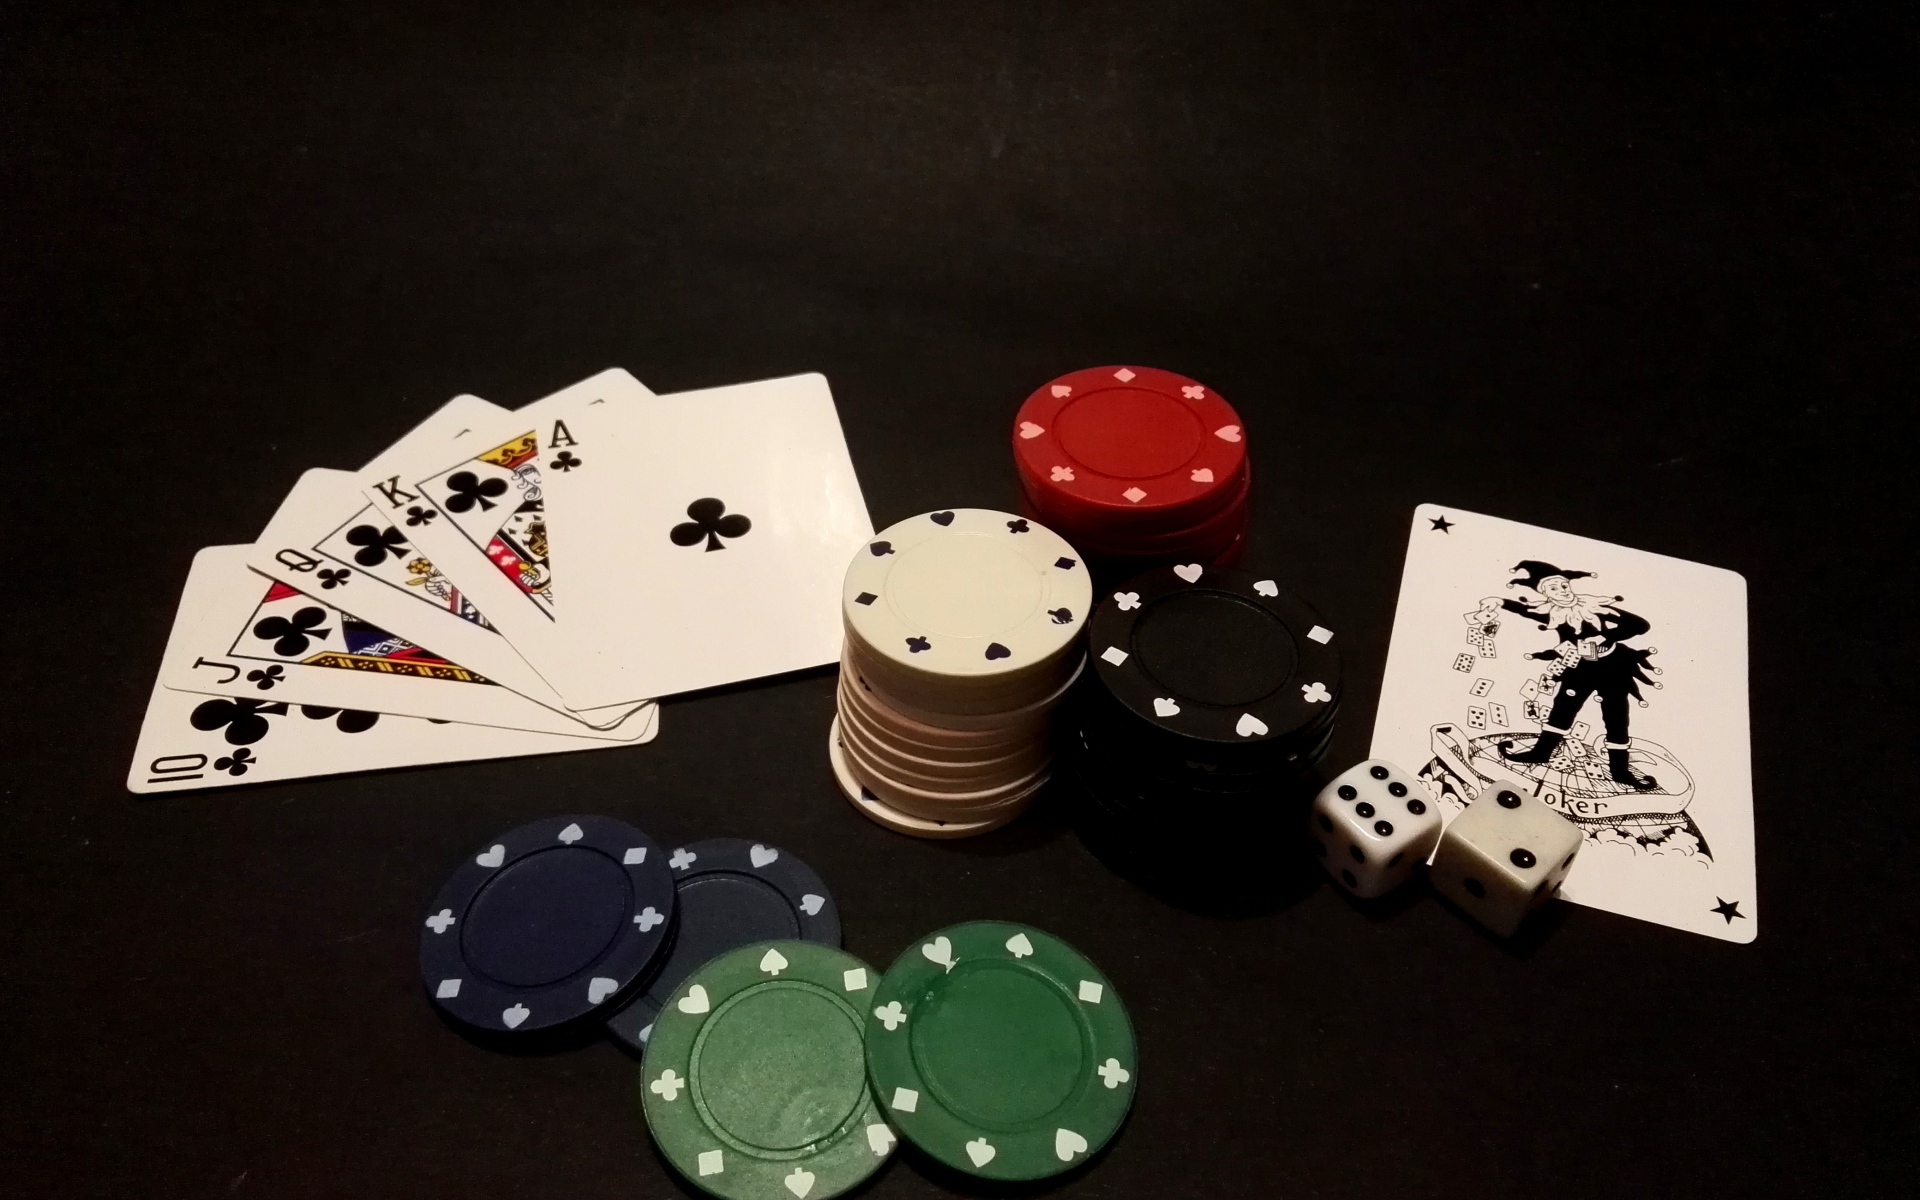 Фишки и карты для игры в покер на черном столе 